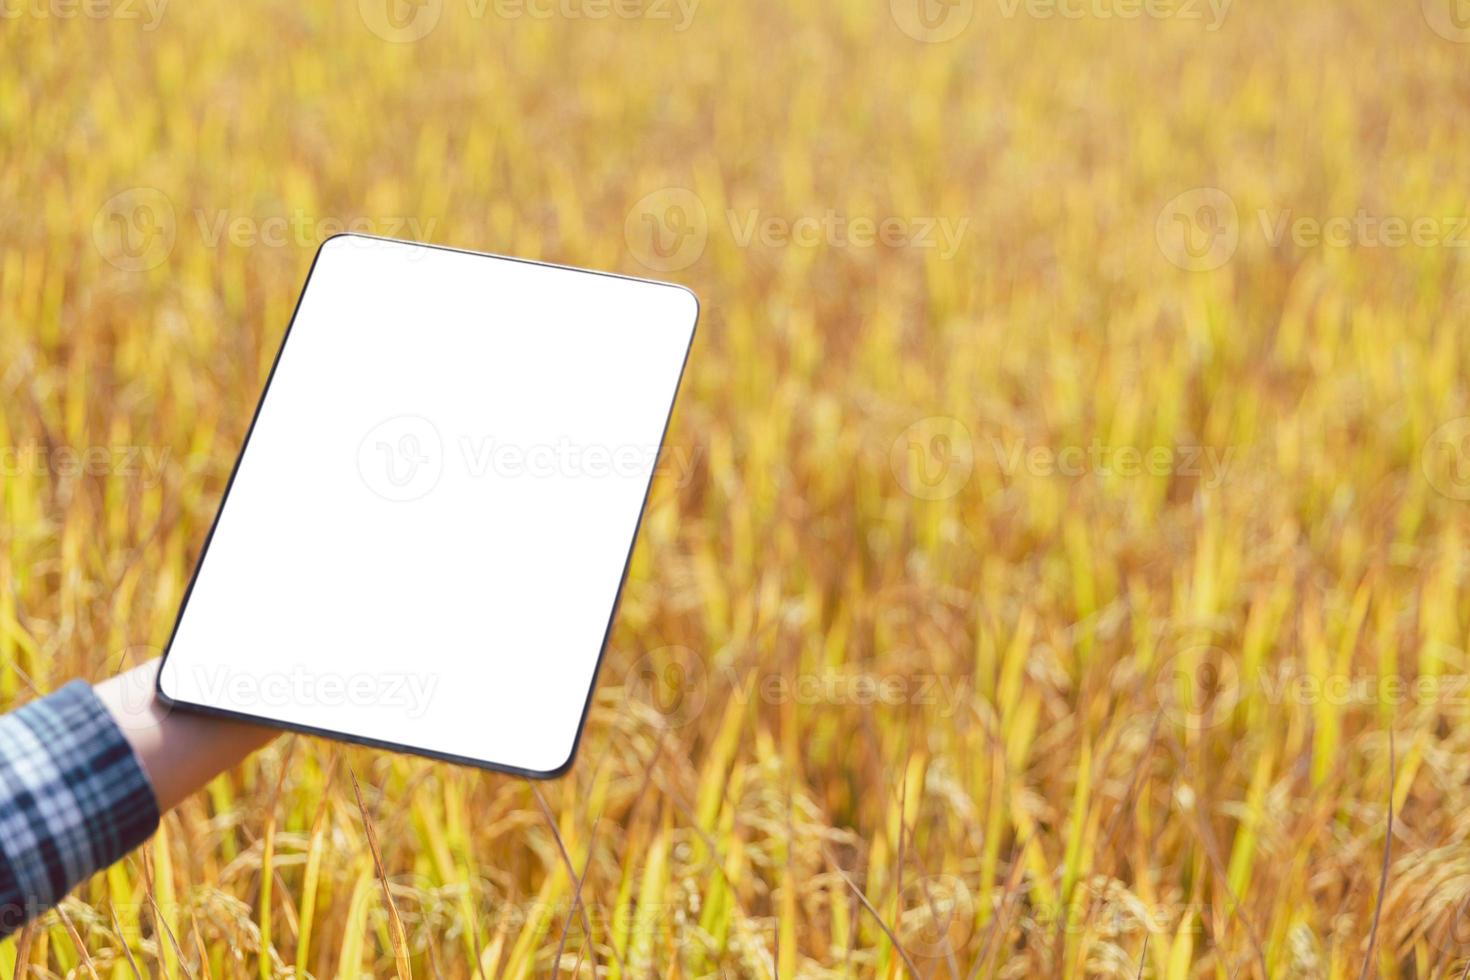 concept d'agriculture, rizière mûre et paysage de ciel à la ferme. récolte des agriculteurs de la rizière pendant la saison des récoltes. agriculteur utilisant une tablette pour rechercher des feuilles de riz dans un champ de ferme biologique. photo